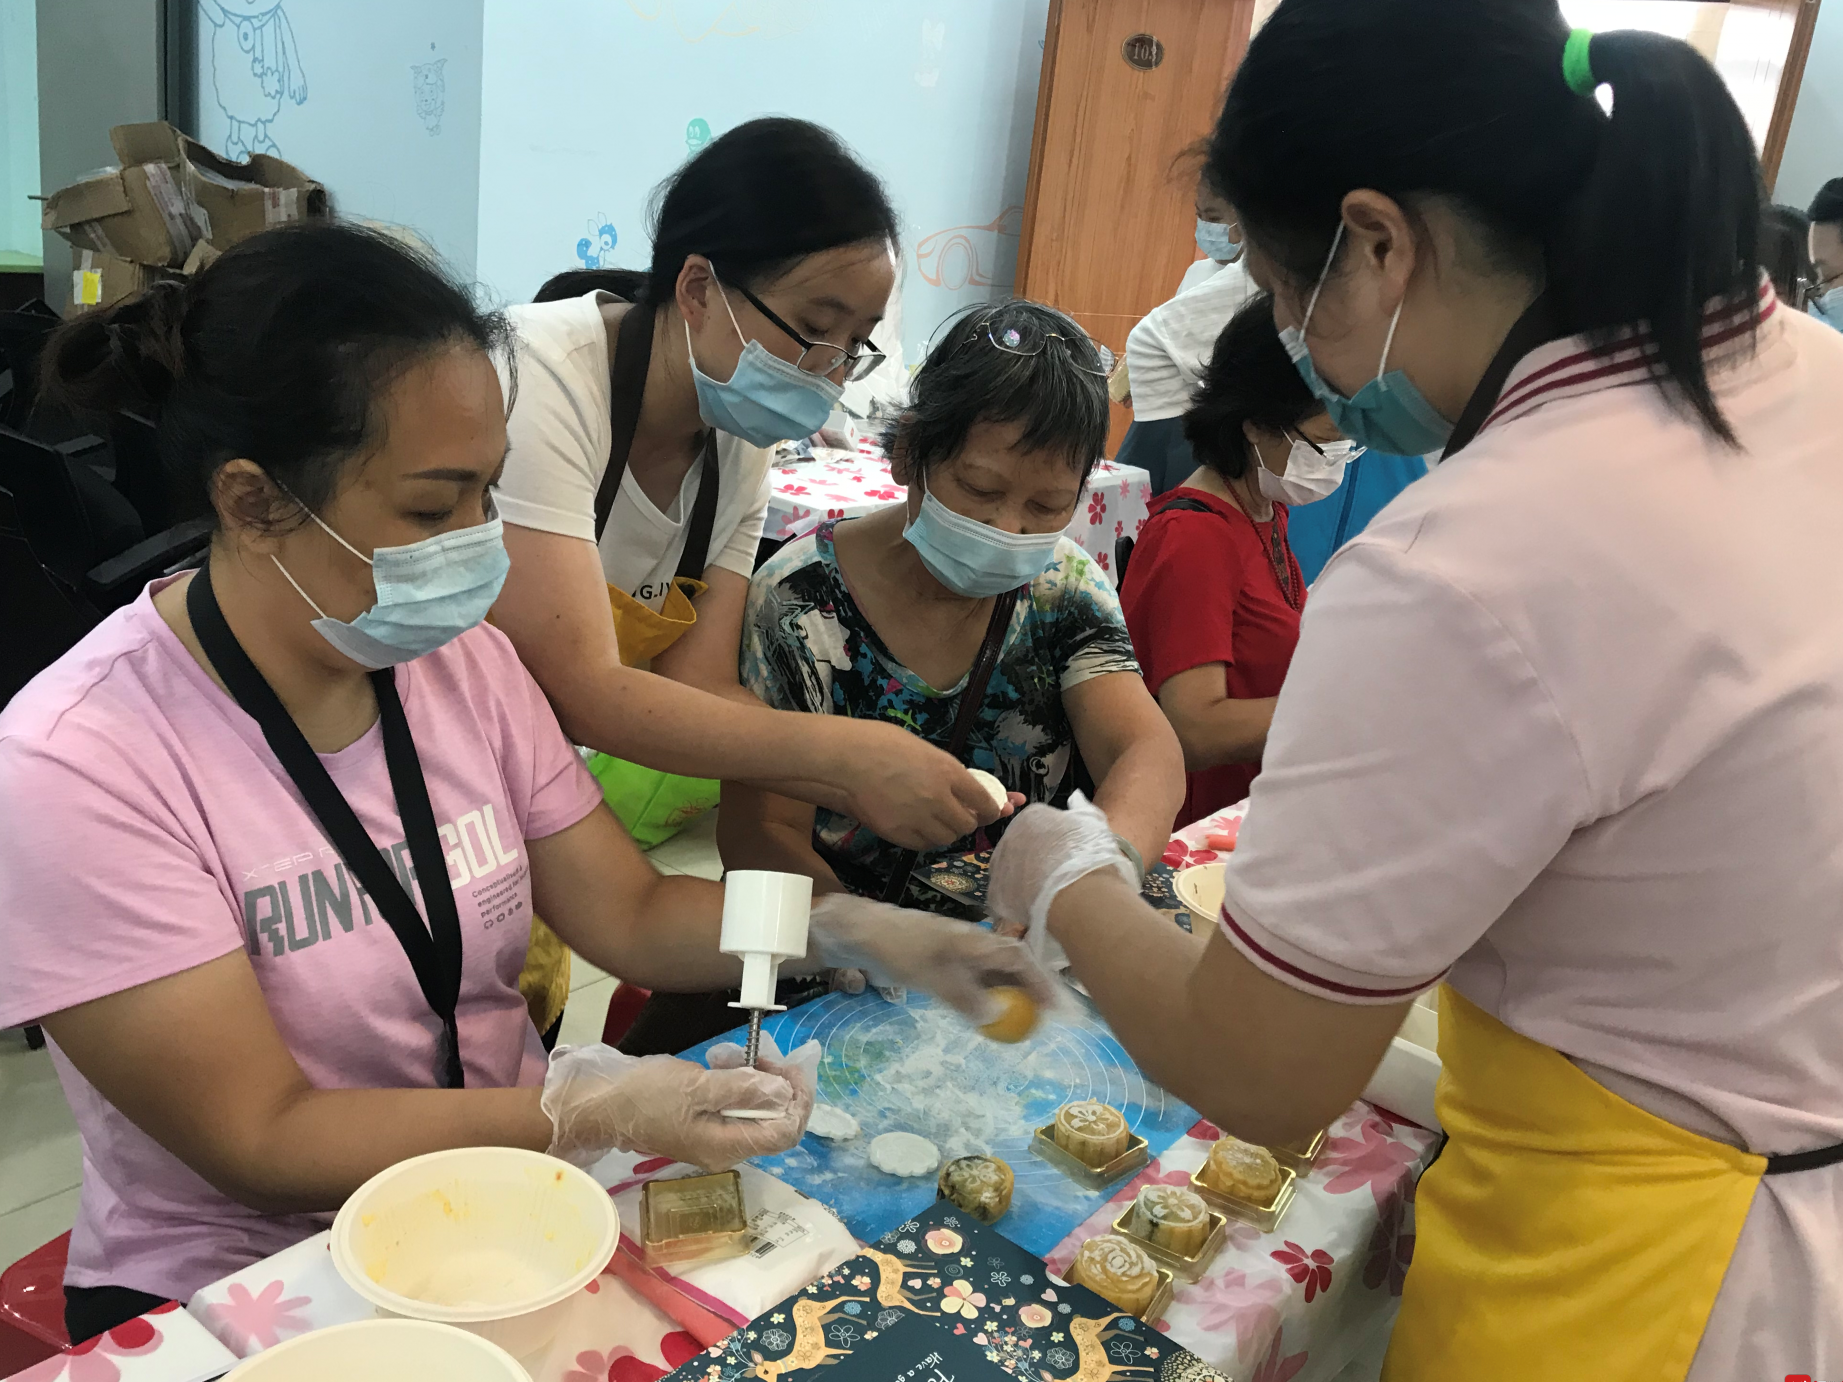 六联社区开展“月满中秋 幸福同行”居民制作月饼活动